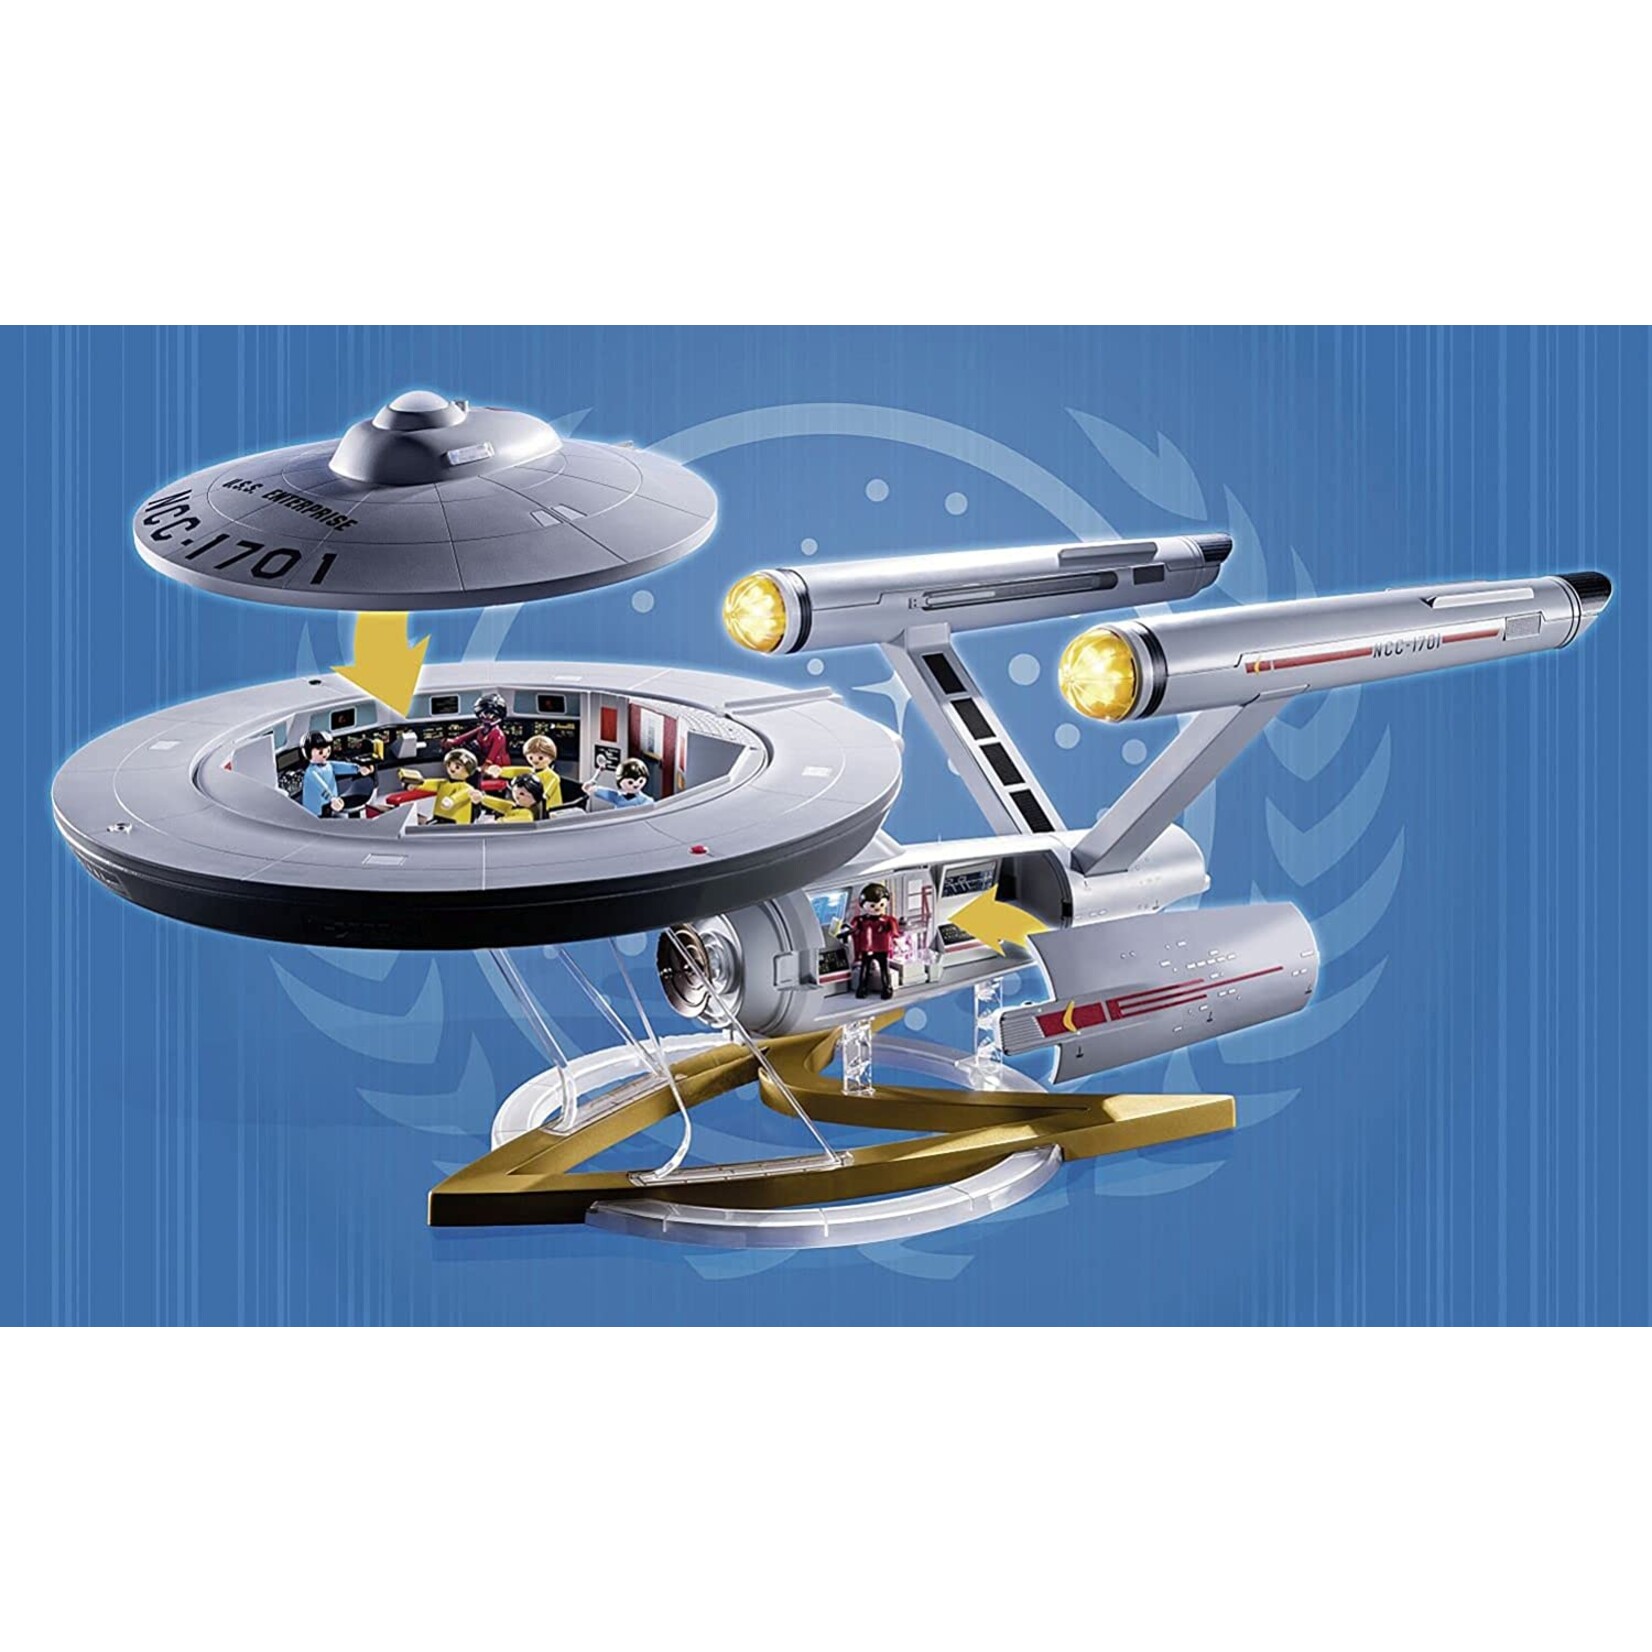 Playmobil Star Trek - U.S.S. Enterprise NCC-1701 - Grow Children's Boutique  Ltd.